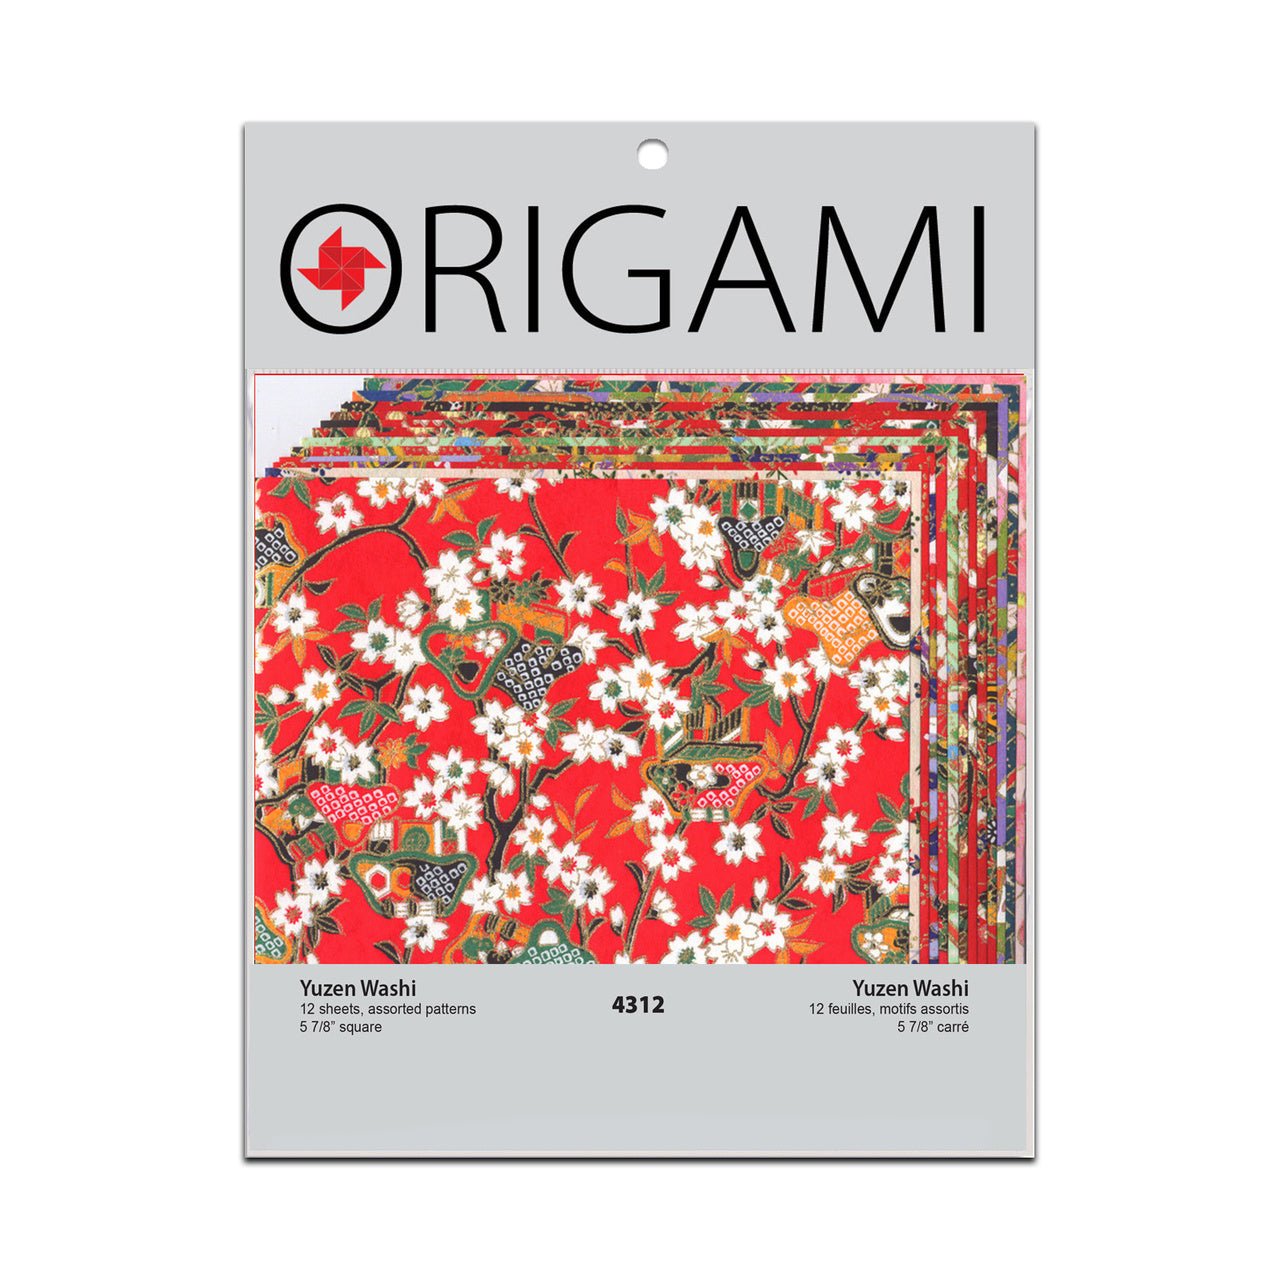 Chiyogami Yuzen Origami Paper - ZAZEN - 4 Sheet Pack - 6 x 6 Inch